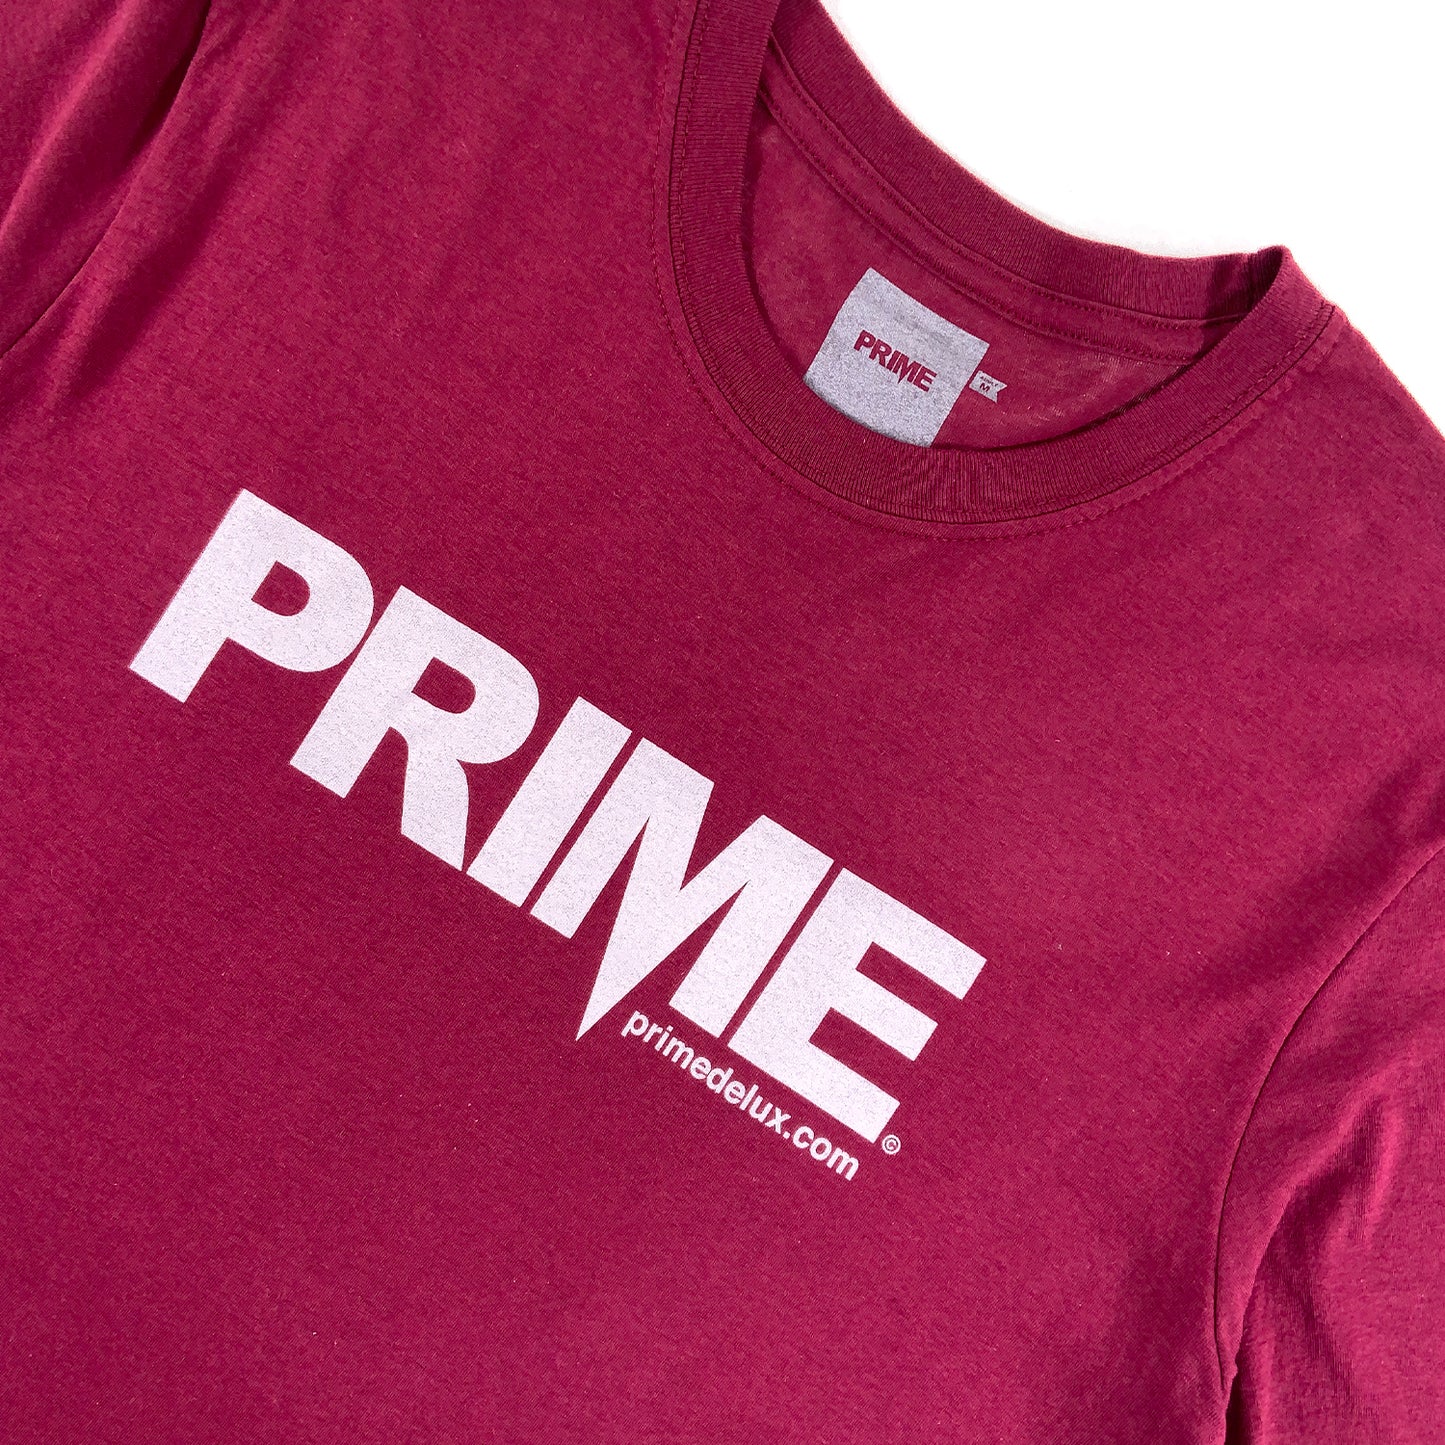 PRIME DELUX OG PREMIUM SHORT SLEEVE T-SHIRT - MAROON / WHITE - Prime Delux Store